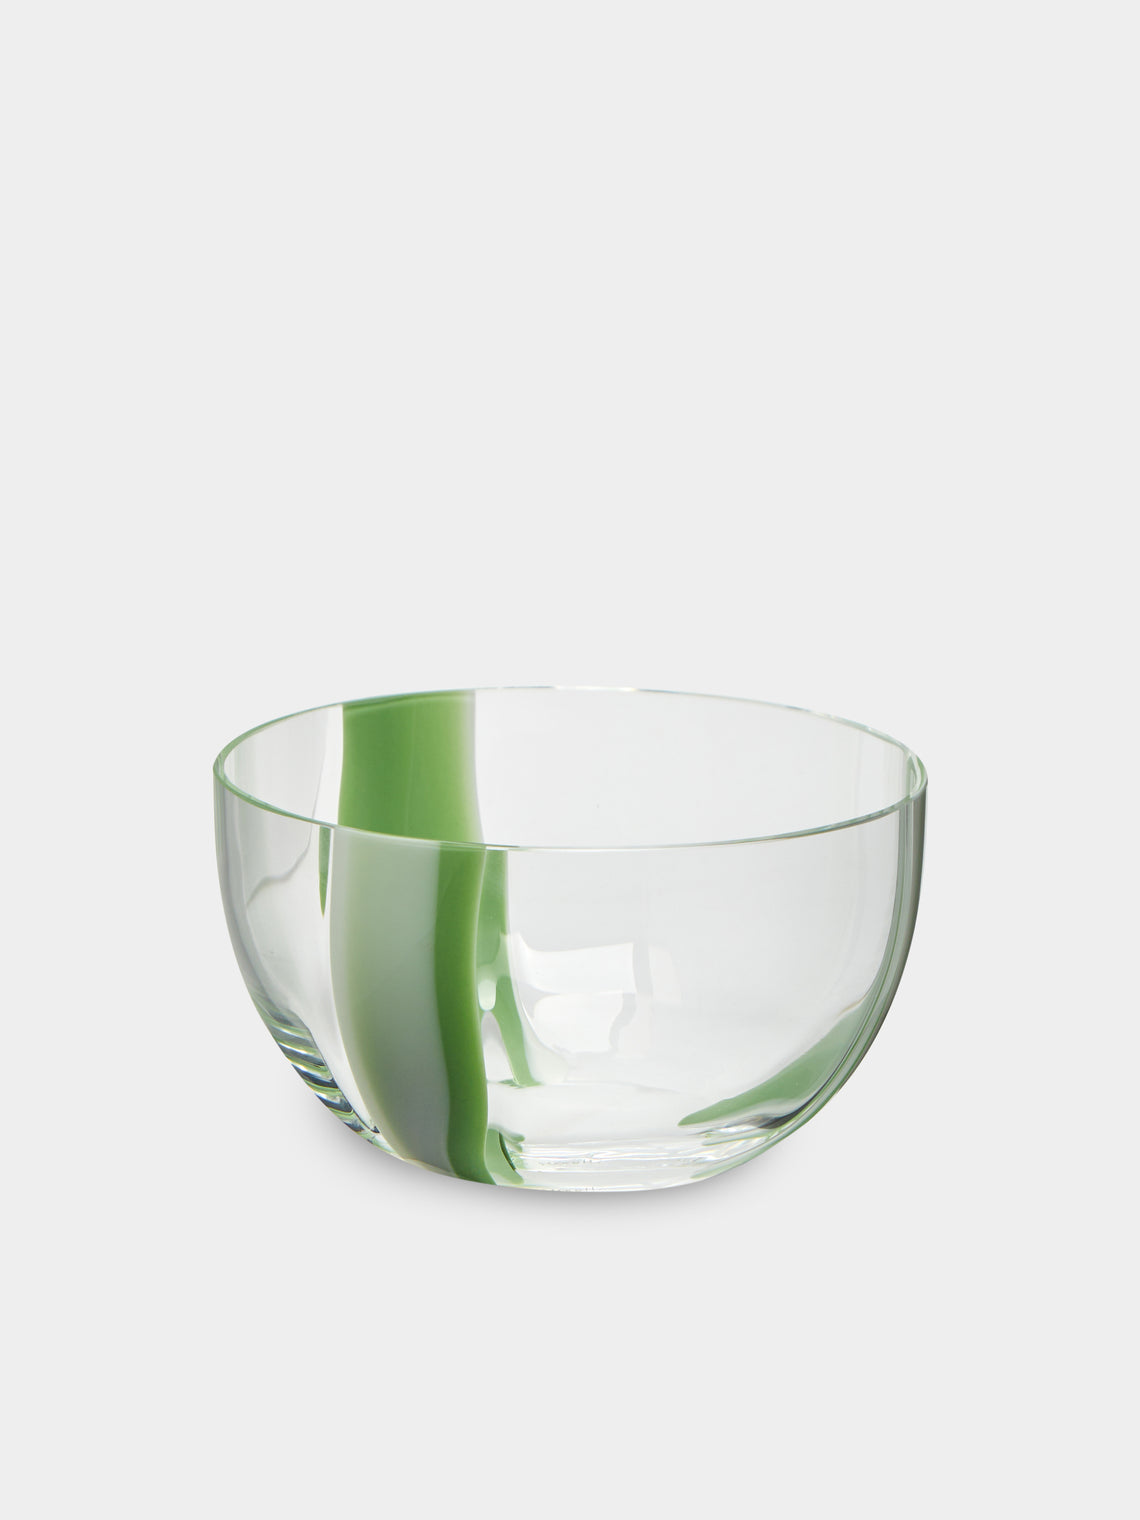 Carlo Moretti - I Diversi Hand-Blown Murano Glass Bowl -  - ABASK - 